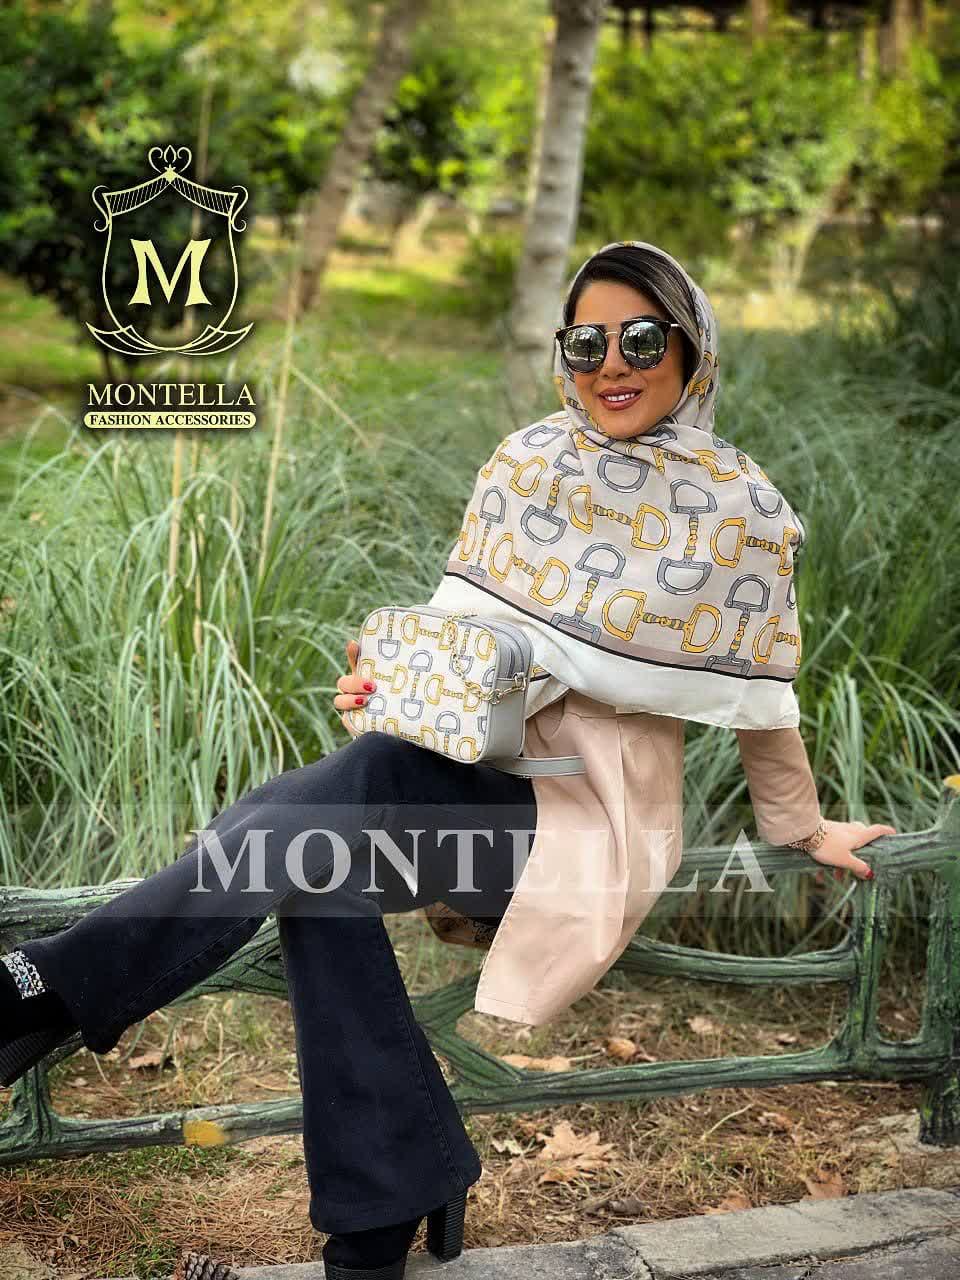 ست کیف و روسری زنانه طرح نلین رنگ زرد با کیف کوچک کیفیت عالی با ارسال رایگان کد mo428